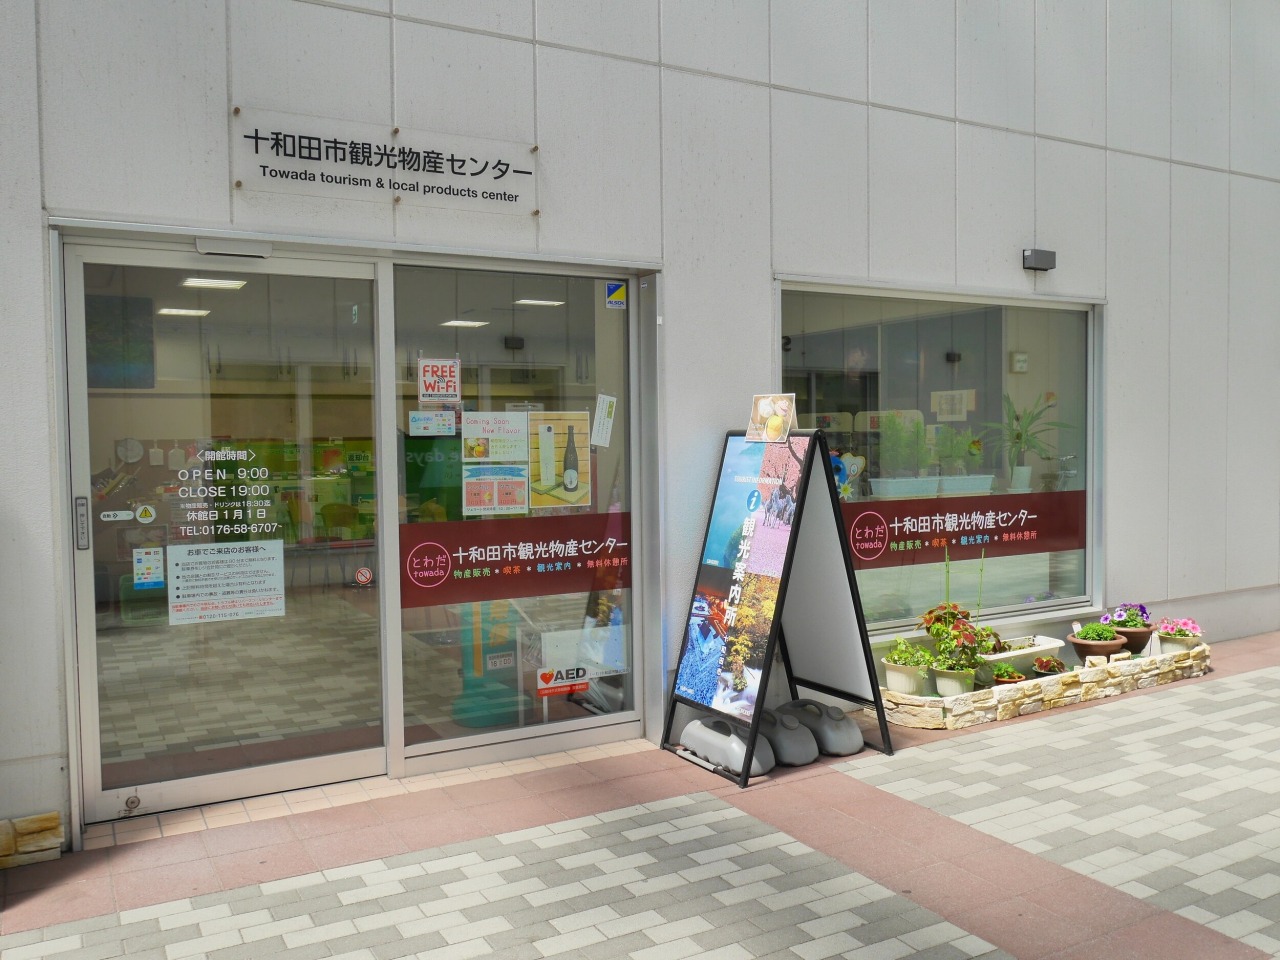 十和田与奥入濑旅游组织旅游咨询中心